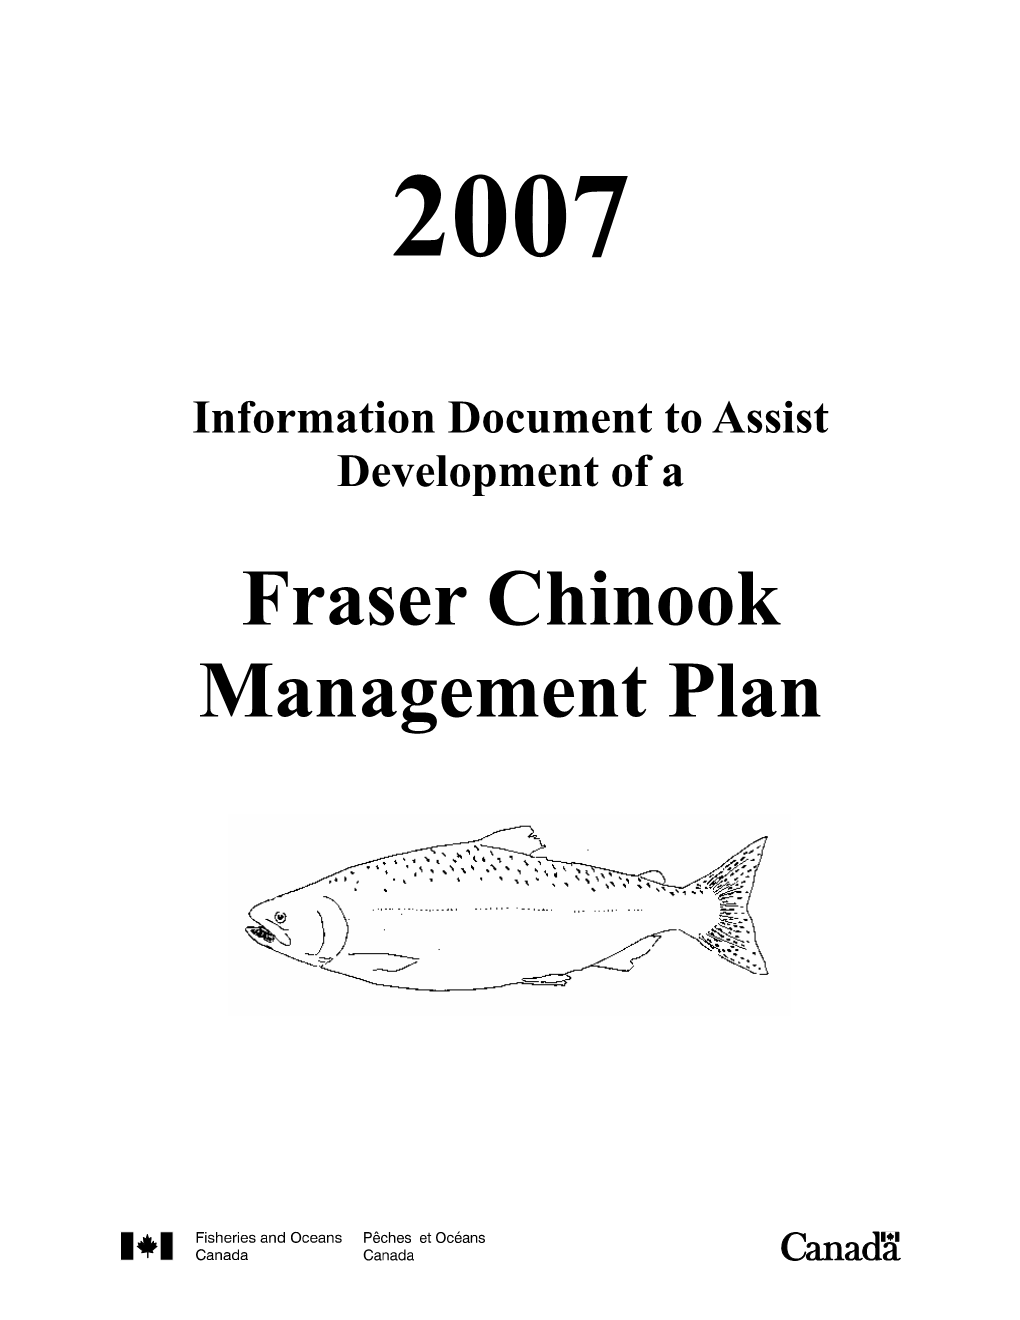 Fraser Chinook Management Plan